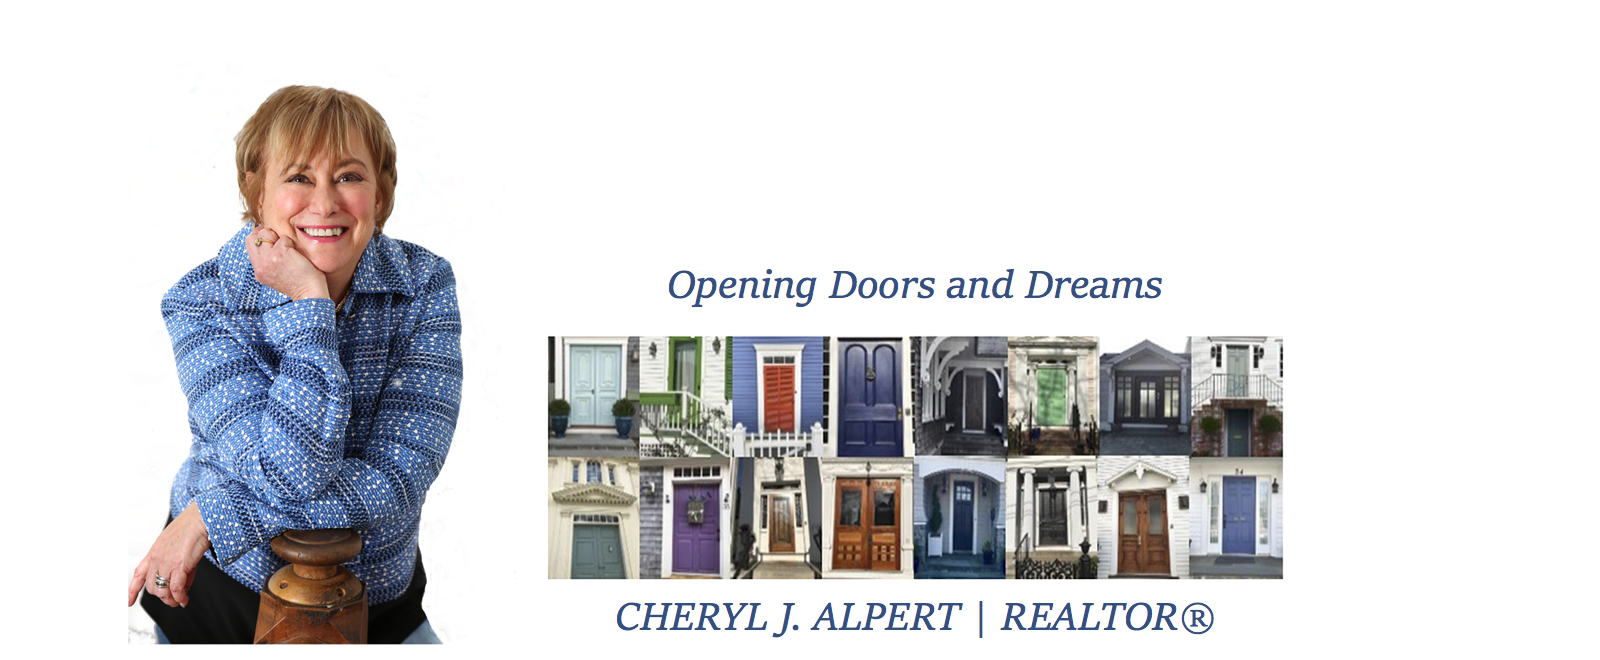 Opening Doors and Dreams - Cheryl J. Alpert, Realtor®